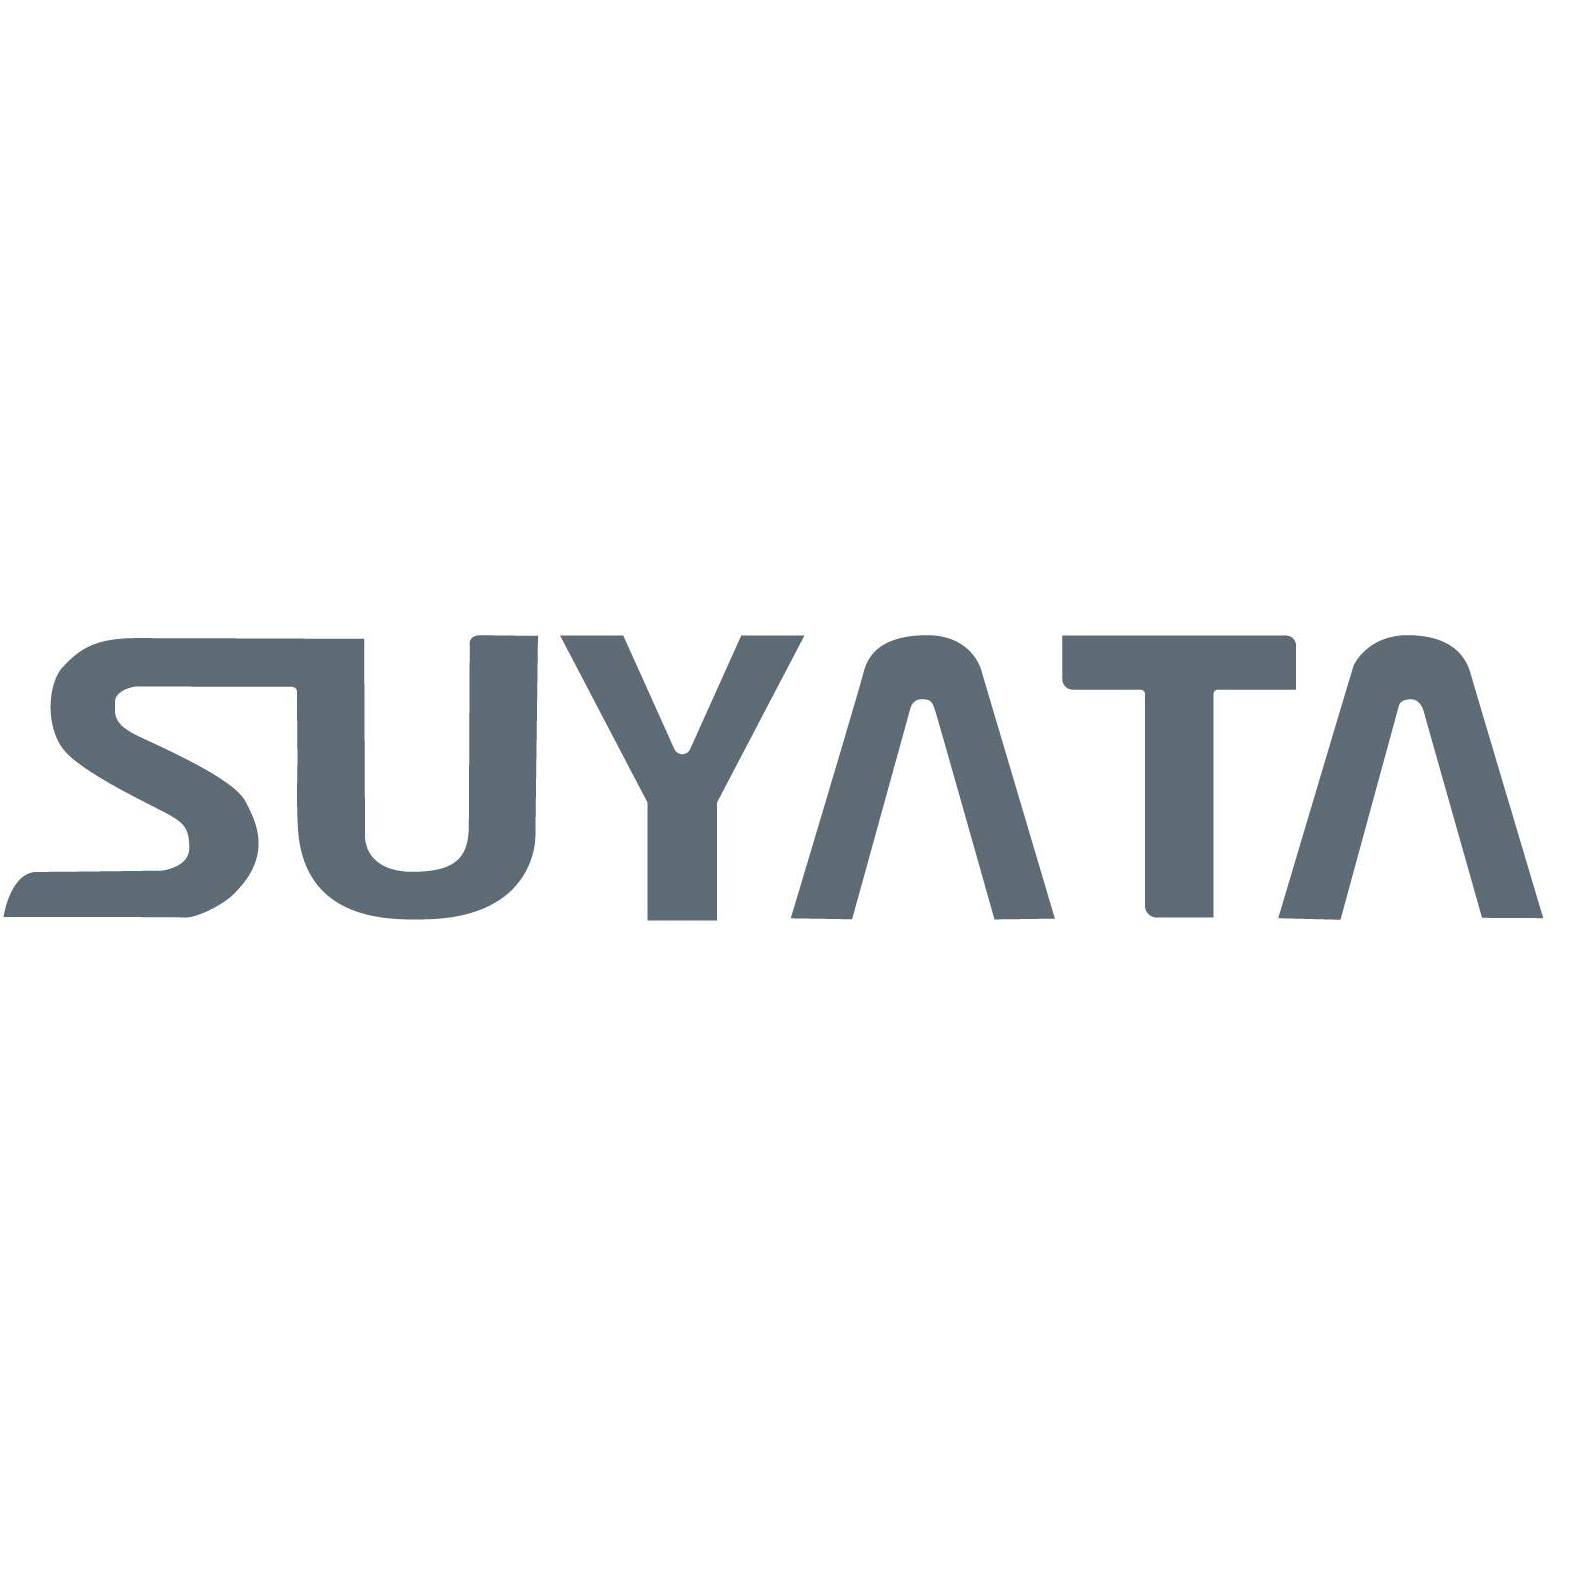 SUYATA MODEL ผลิตภัณฑ์ของ SUYATA มีความหลากหลาย ตั้งแต่สไตล์การ์ตูนไปจนถึงสไตล์นิยายวิทยาศาสตร์ ตั้งแต่ยานยนต์จักรกลไปจนถึงหุ่นจำลองและสัตว์ต่างๆ